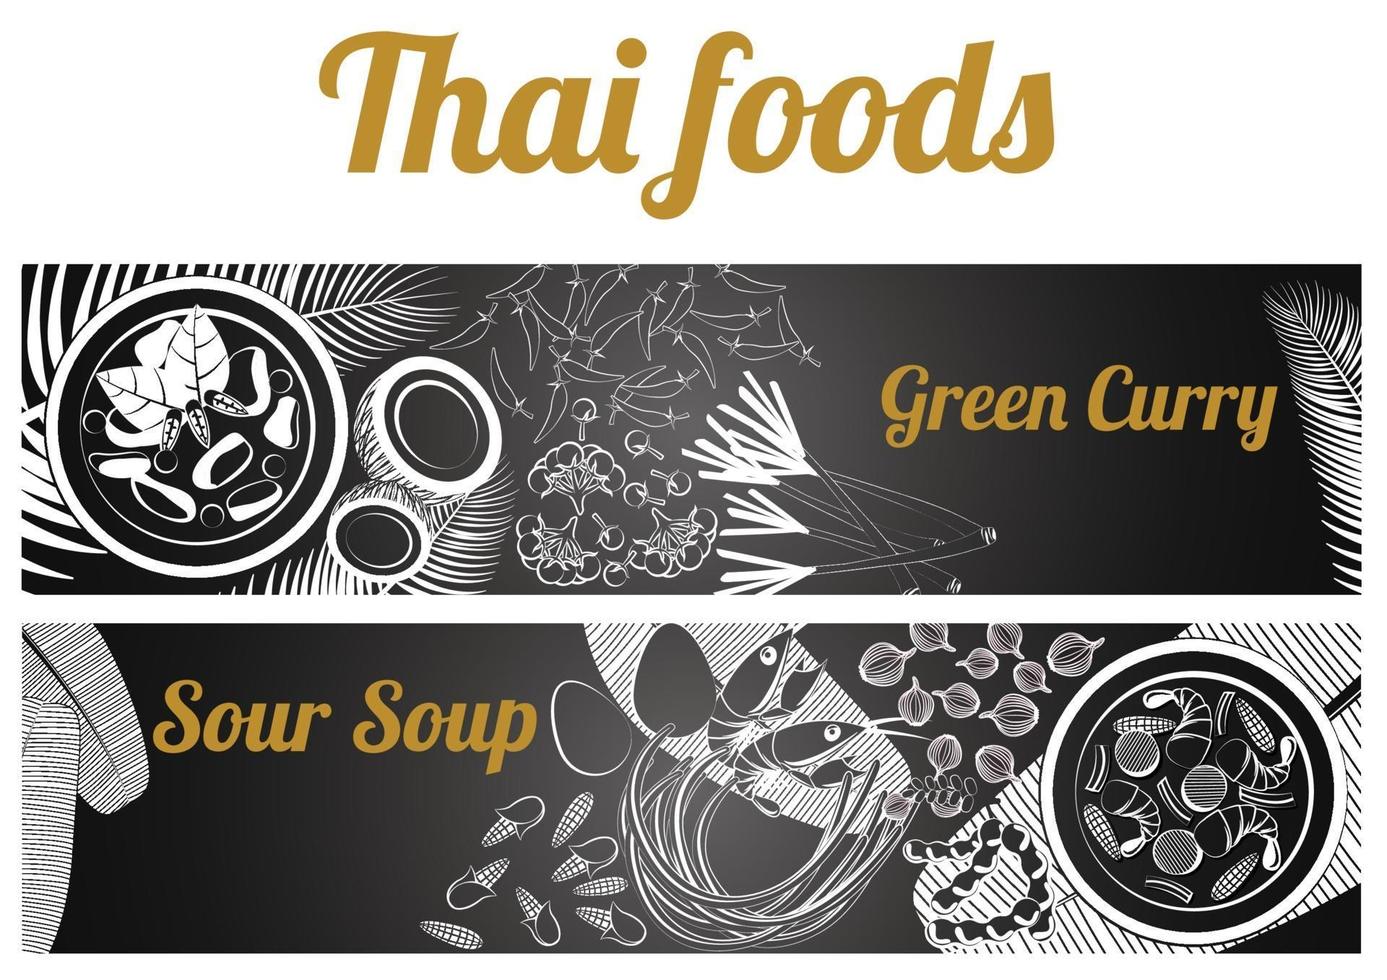 bannière de nourriture thaïlandaise massaman et phad thai vecteur